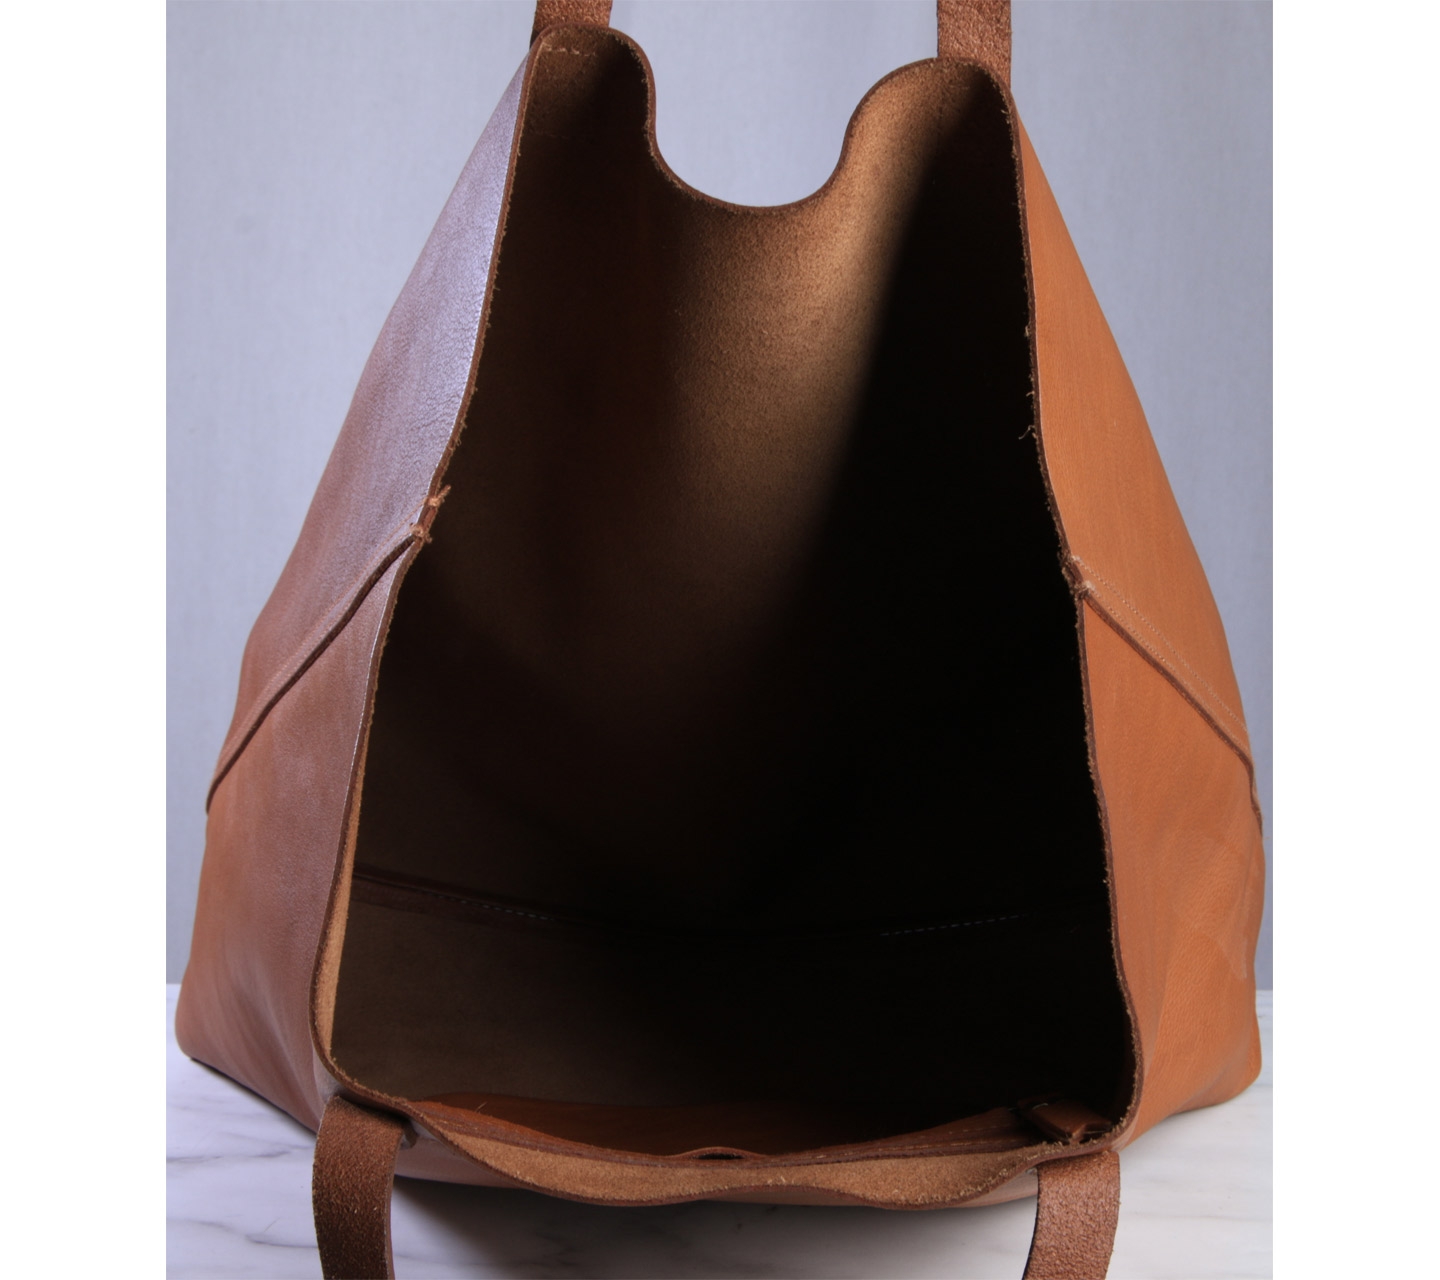 Madewell Brown Tote Bag